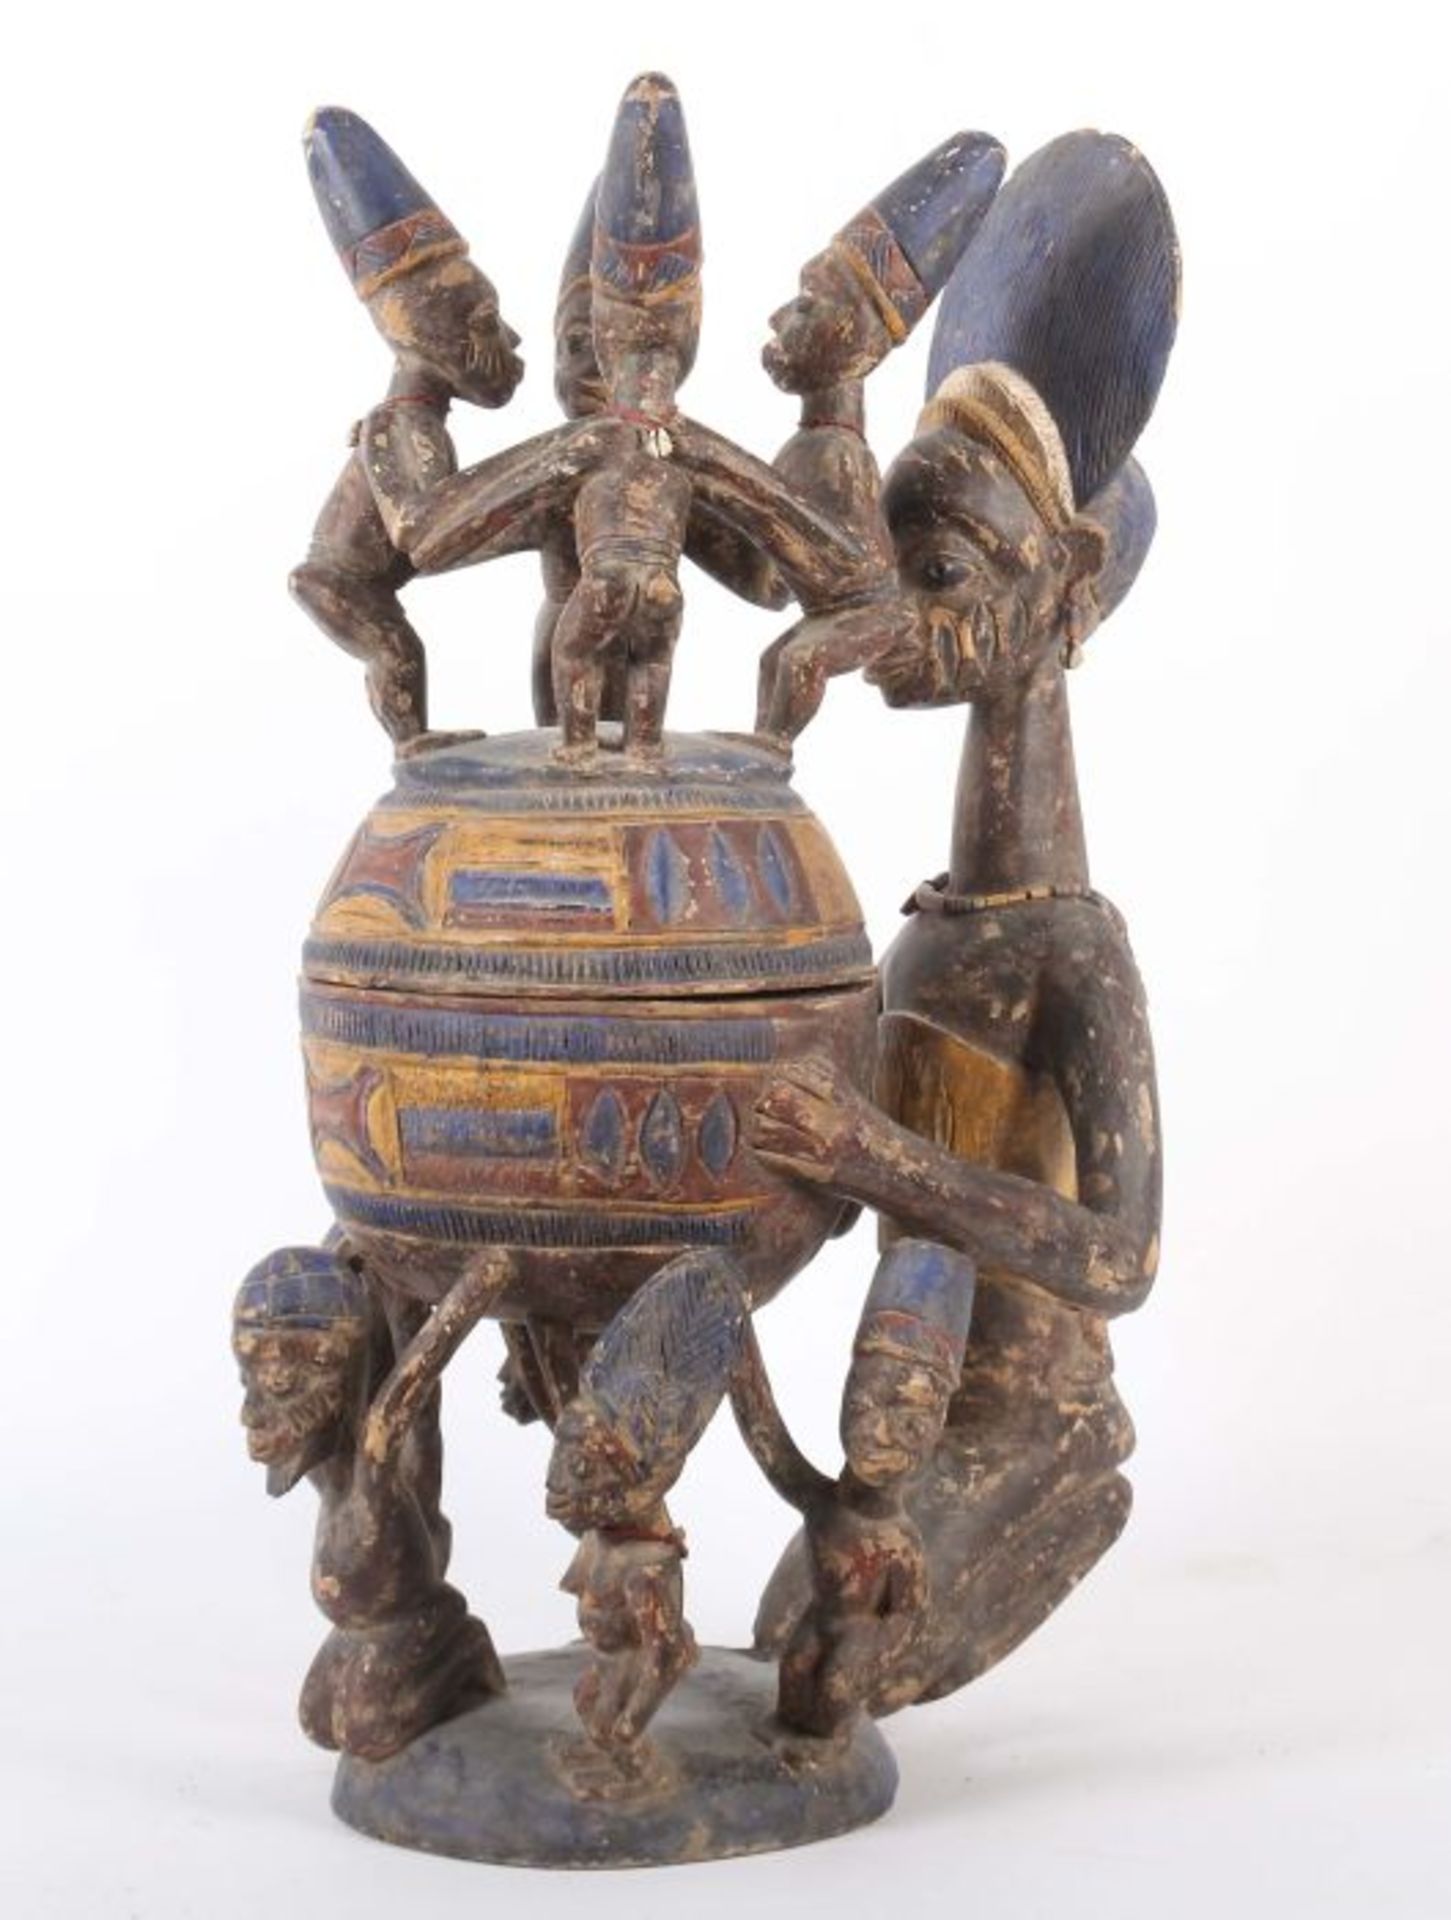 Großes Olumeye-GefäßNigeria, Stamm der Yoruba, 5 Trägerfiguren und 1 große Mutterfigur mit Kind - Image 3 of 10